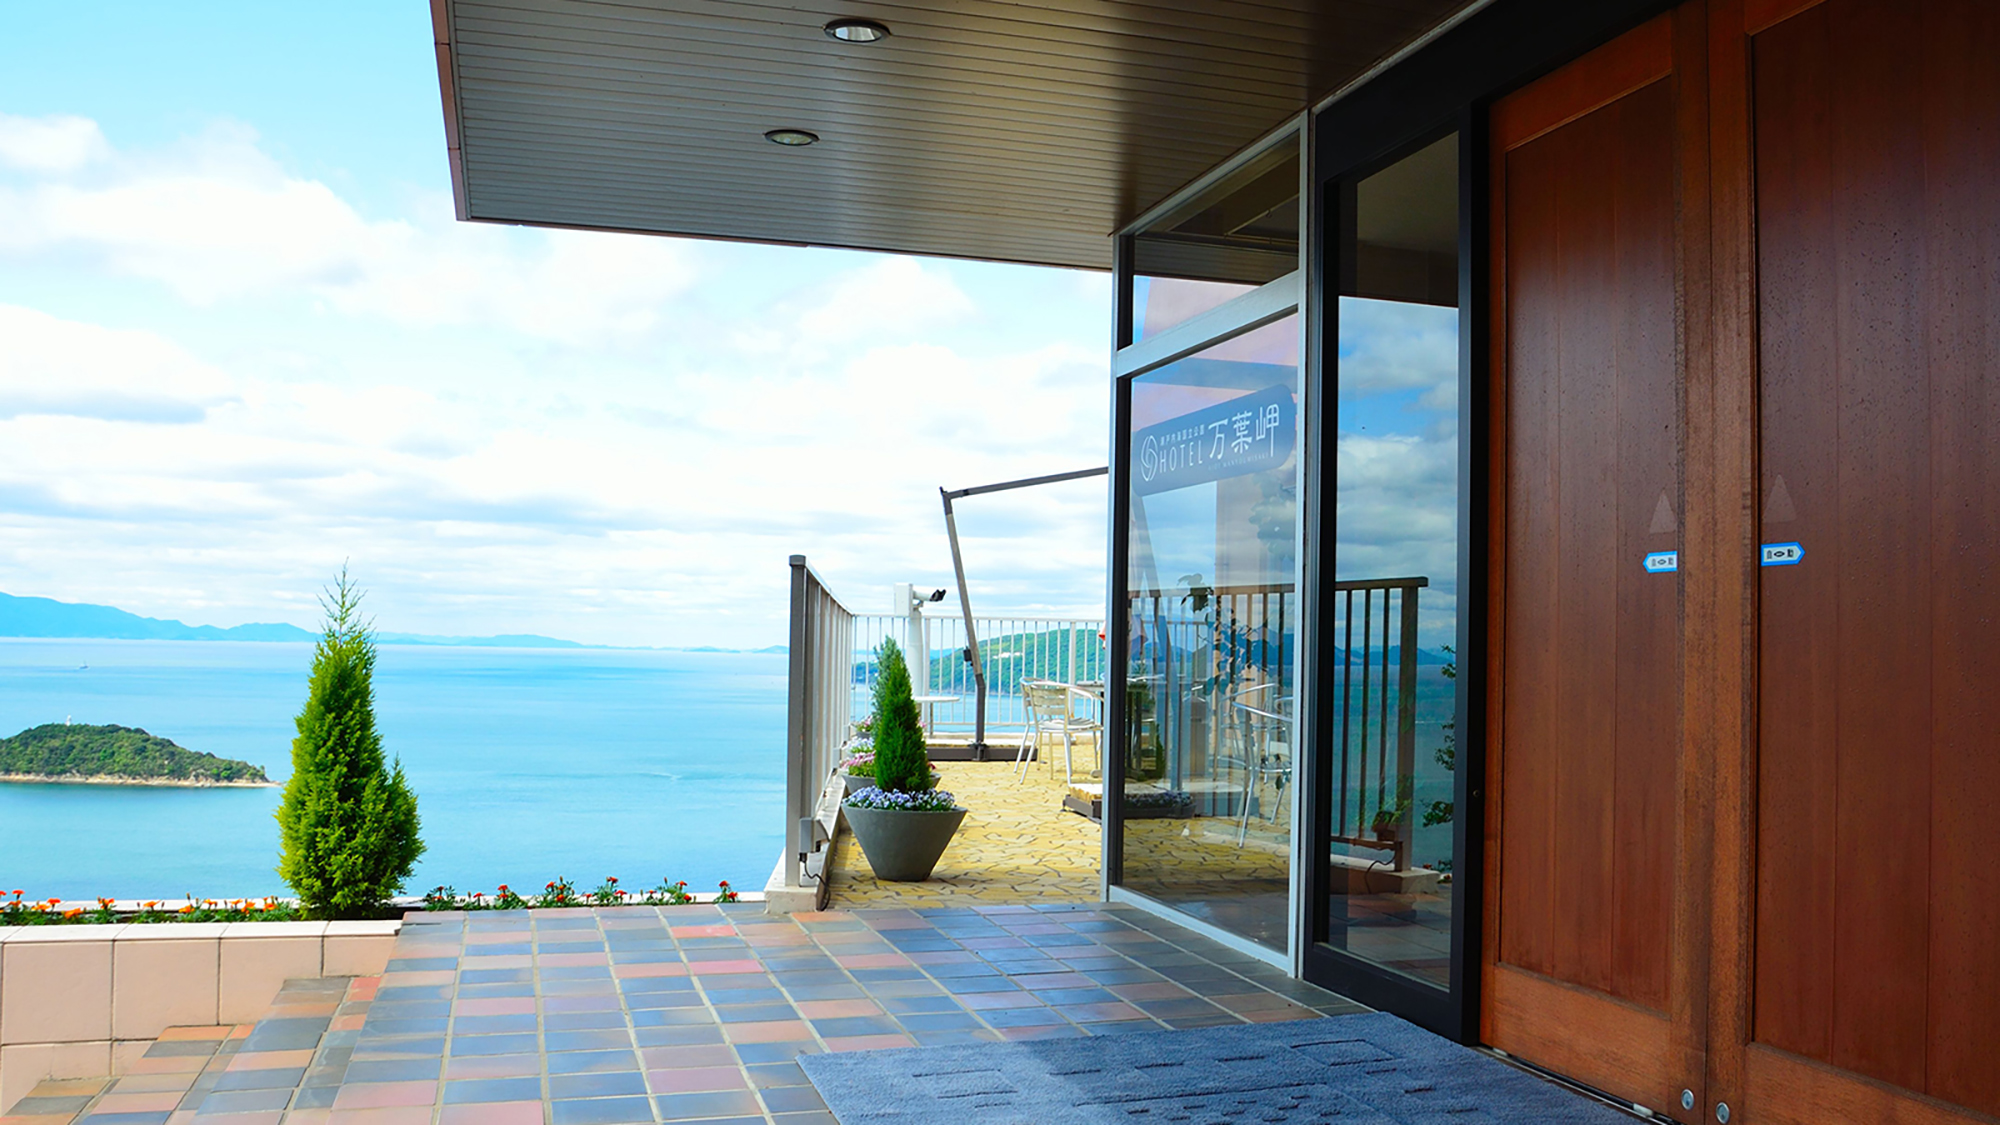 ホテル万葉岬エントランス・美しい瀬戸内の景色が広がります。